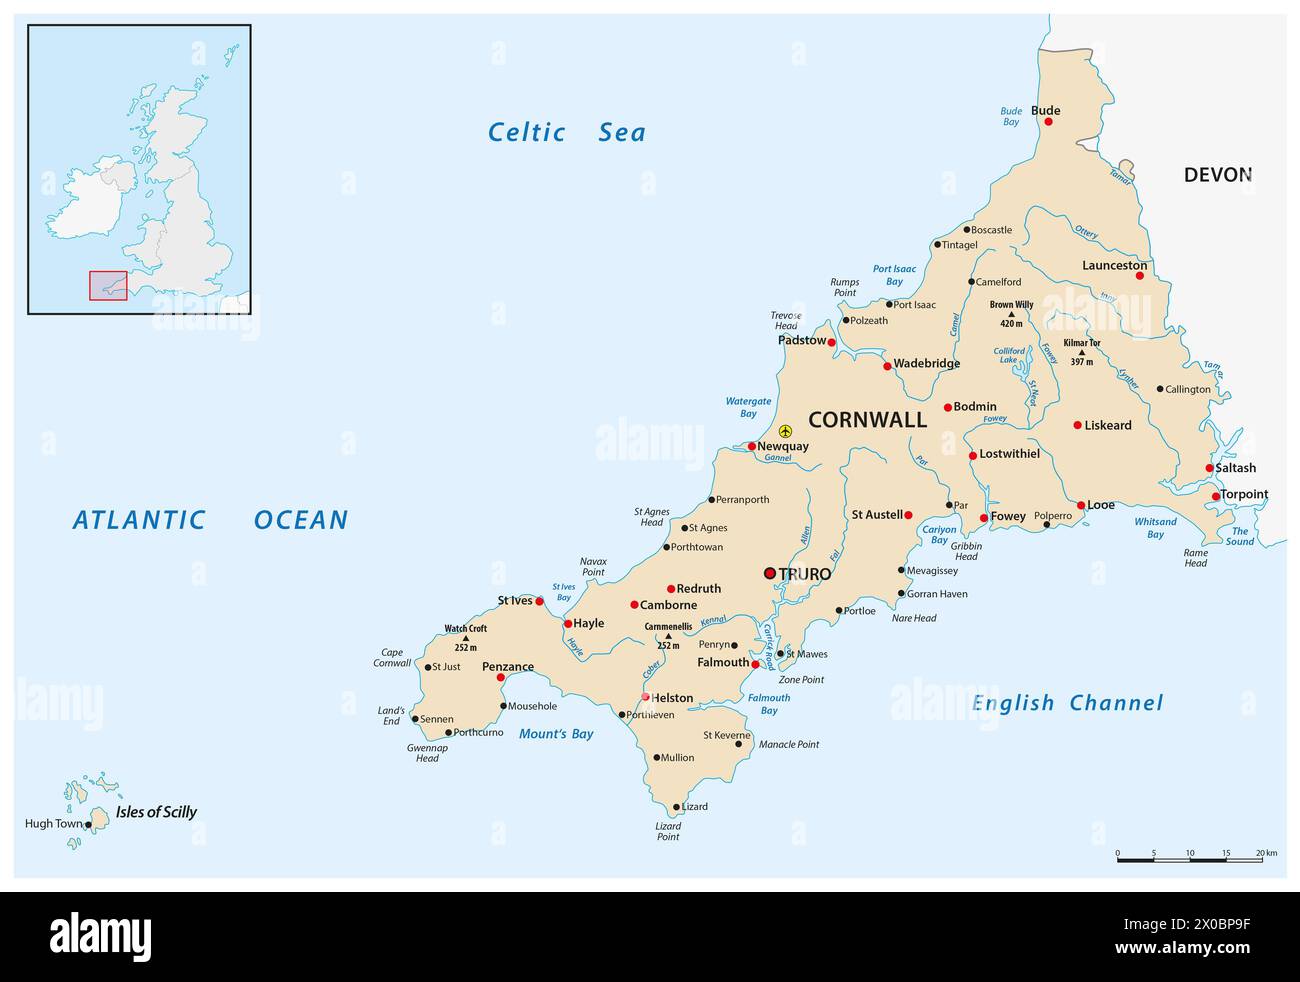 mappa vettoriale della cornovaglia e delle isole scilly regno unito Foto Stock